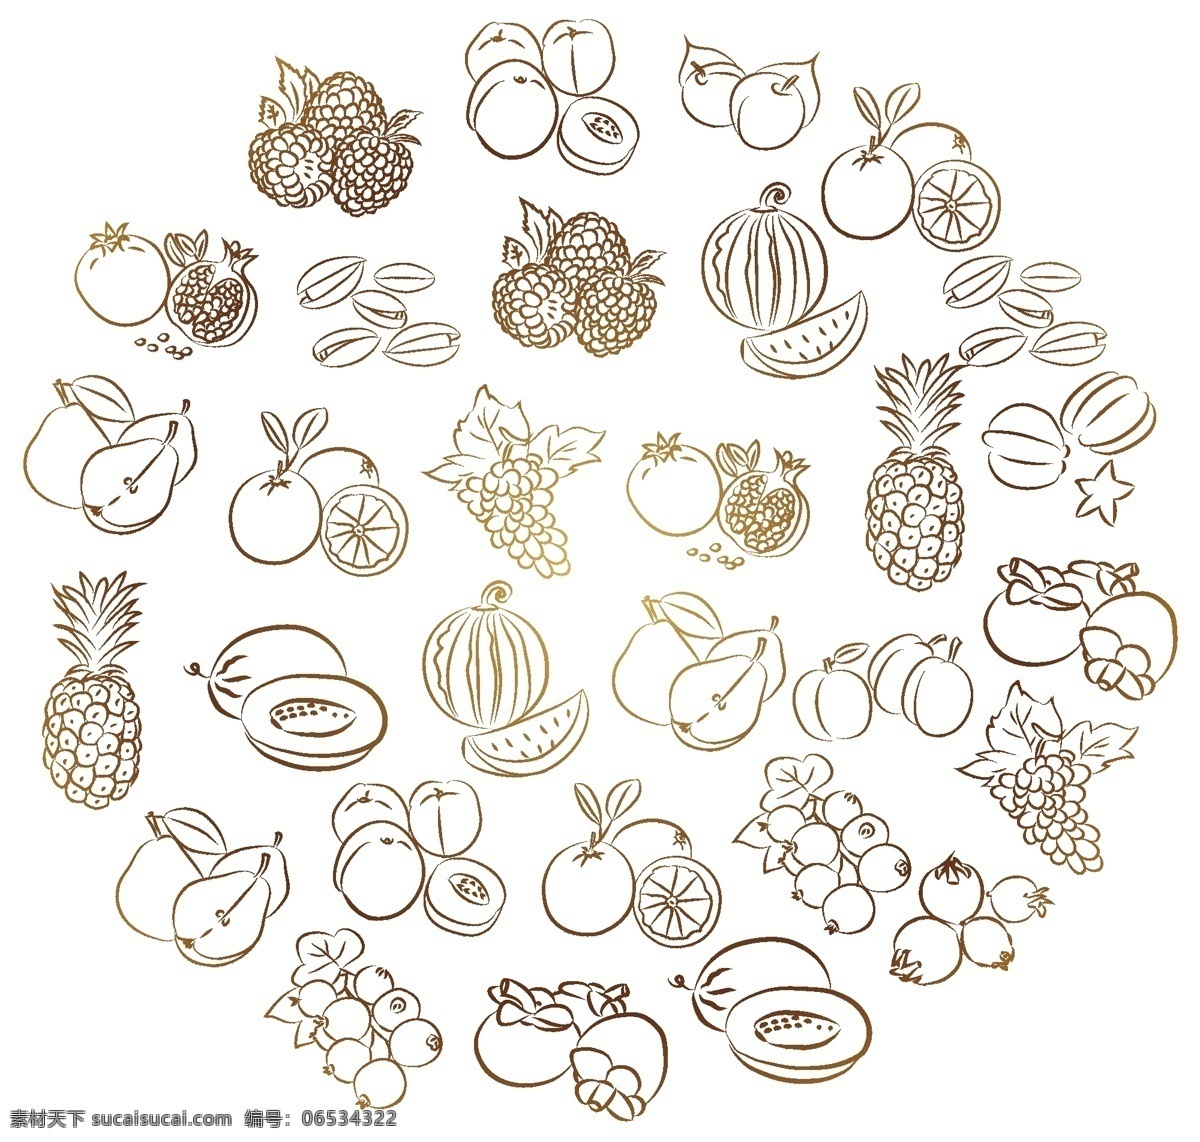 矢量水果 水果 手绘水果 圆形水果 水果素材 苹果 菠萝 梨 西瓜 矢量素材 标志图标 其他图标